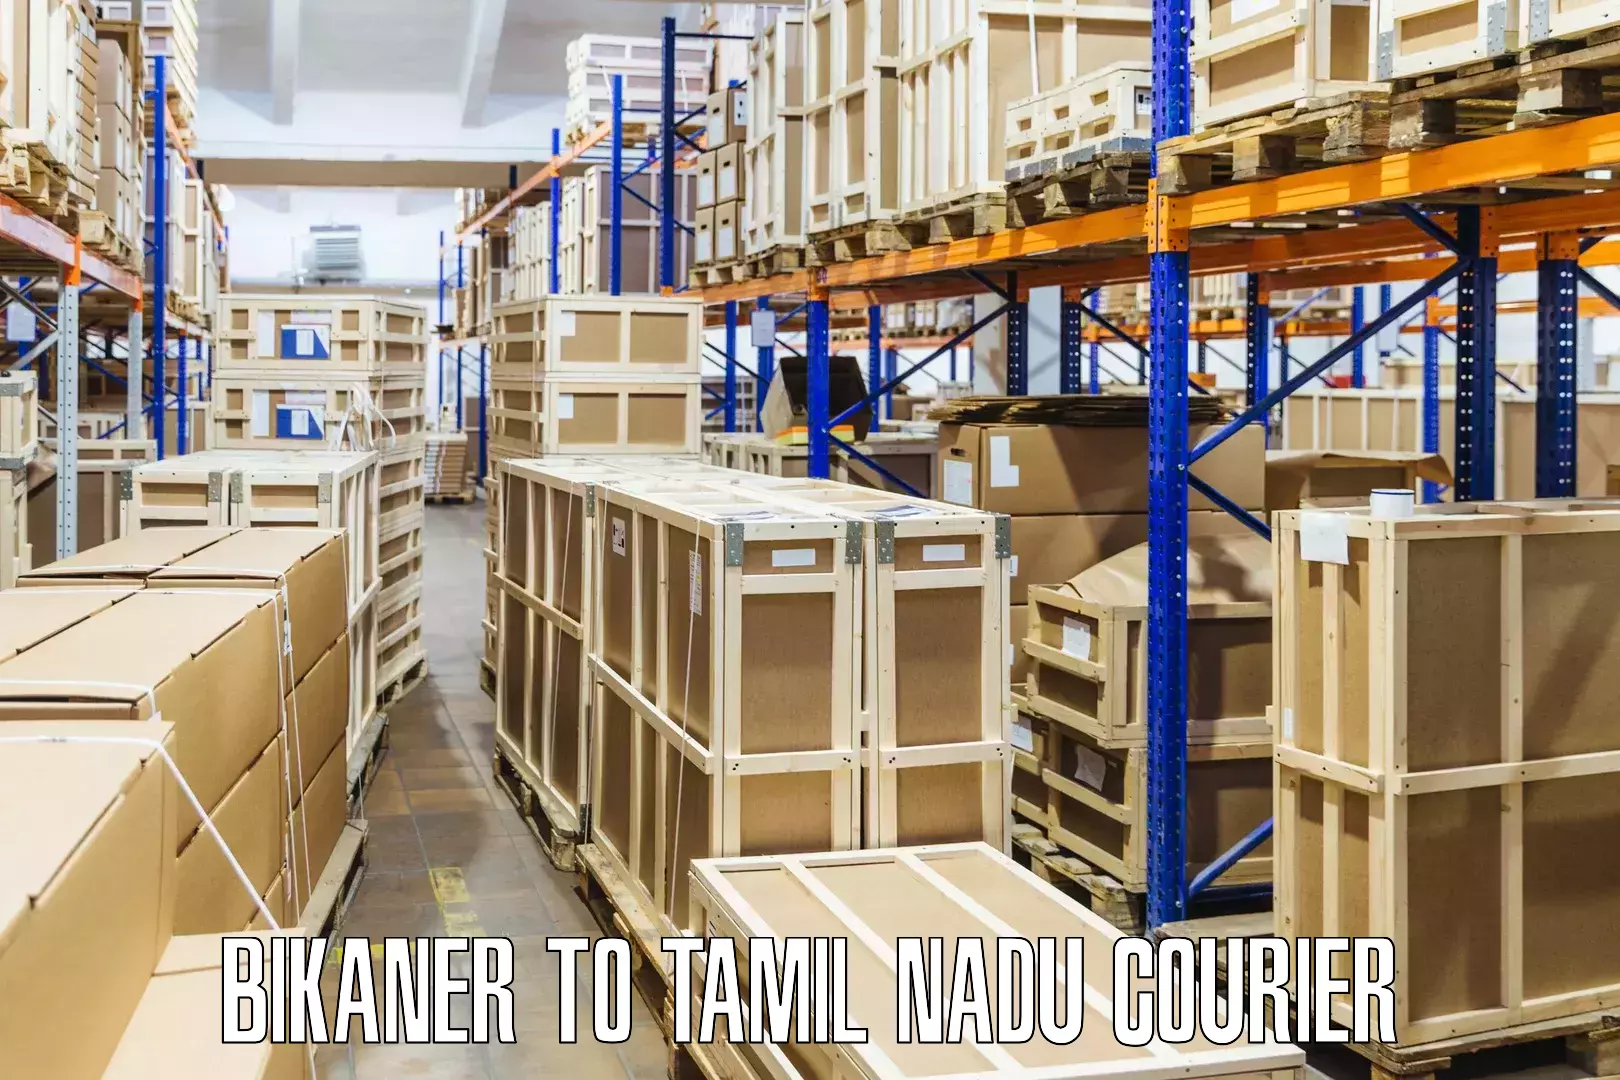 Advanced courier platforms Bikaner to Tamil Nadu